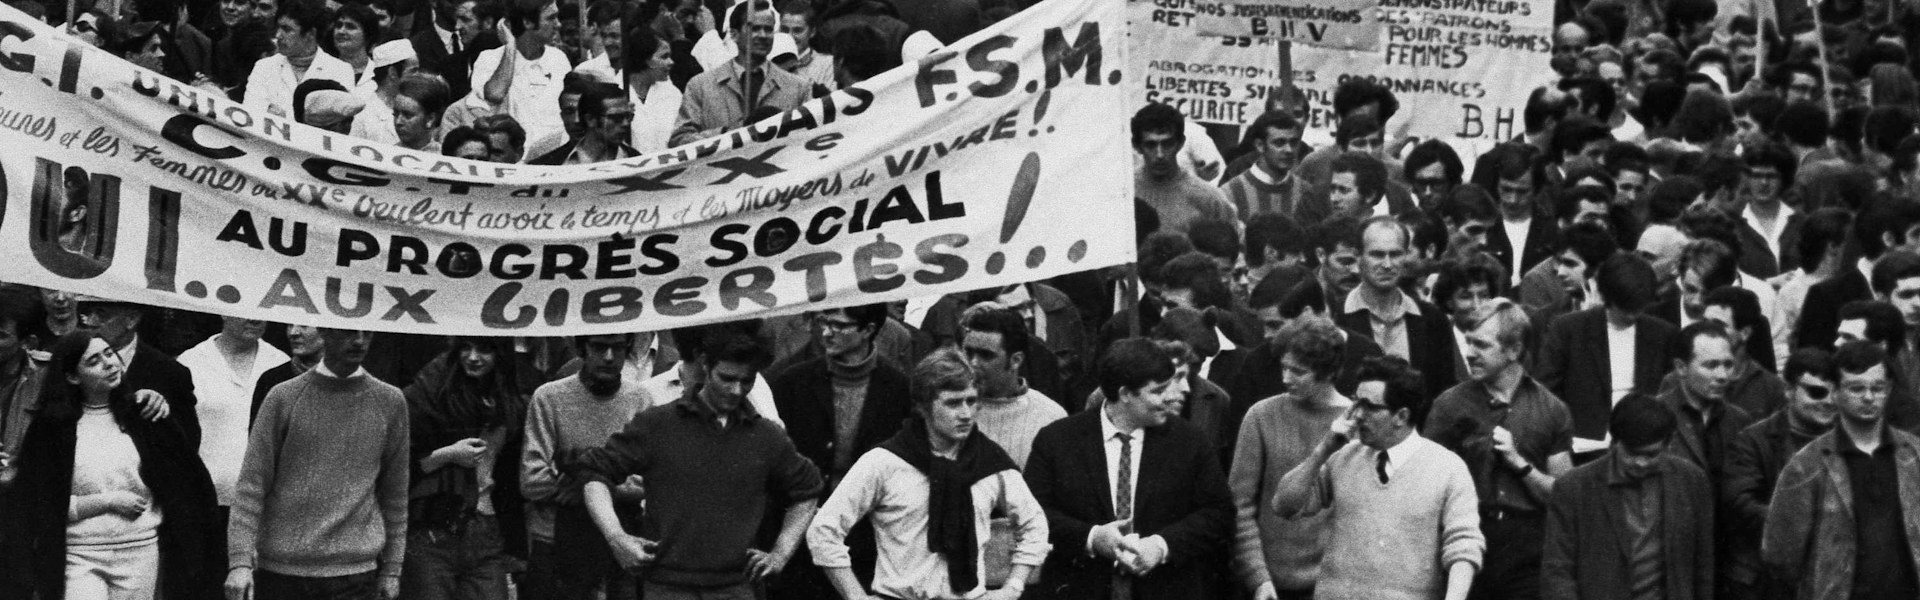 מחאת הסטודנטים בפריז, 1968. המחאה הפכה למעין מיצג, עם יכולת מוגבלת להשפיע / צילום: Associated Press